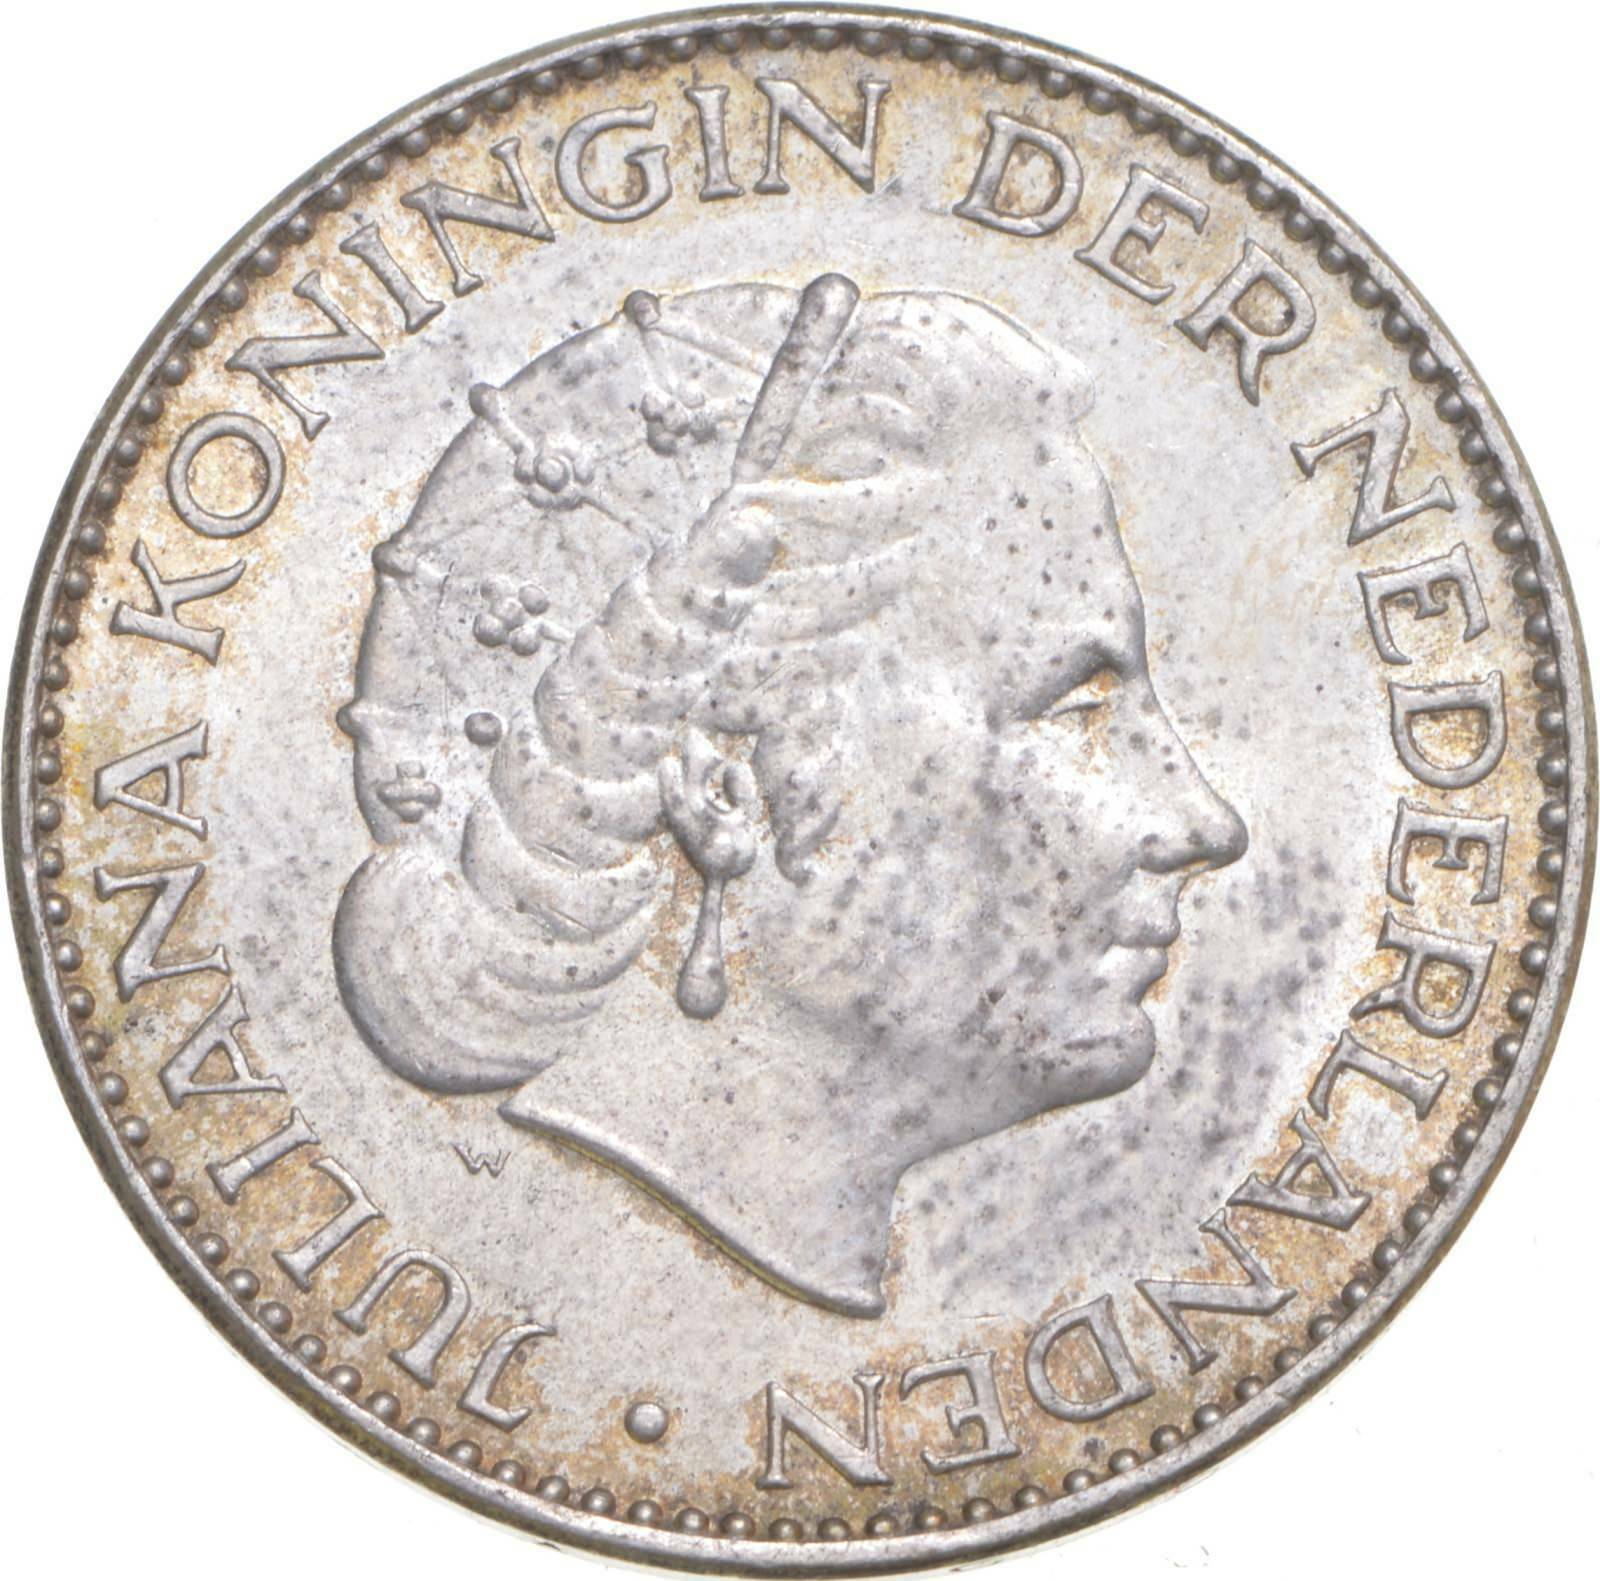 Better - 1963 Netherlands 1 Gulden - Tc *193